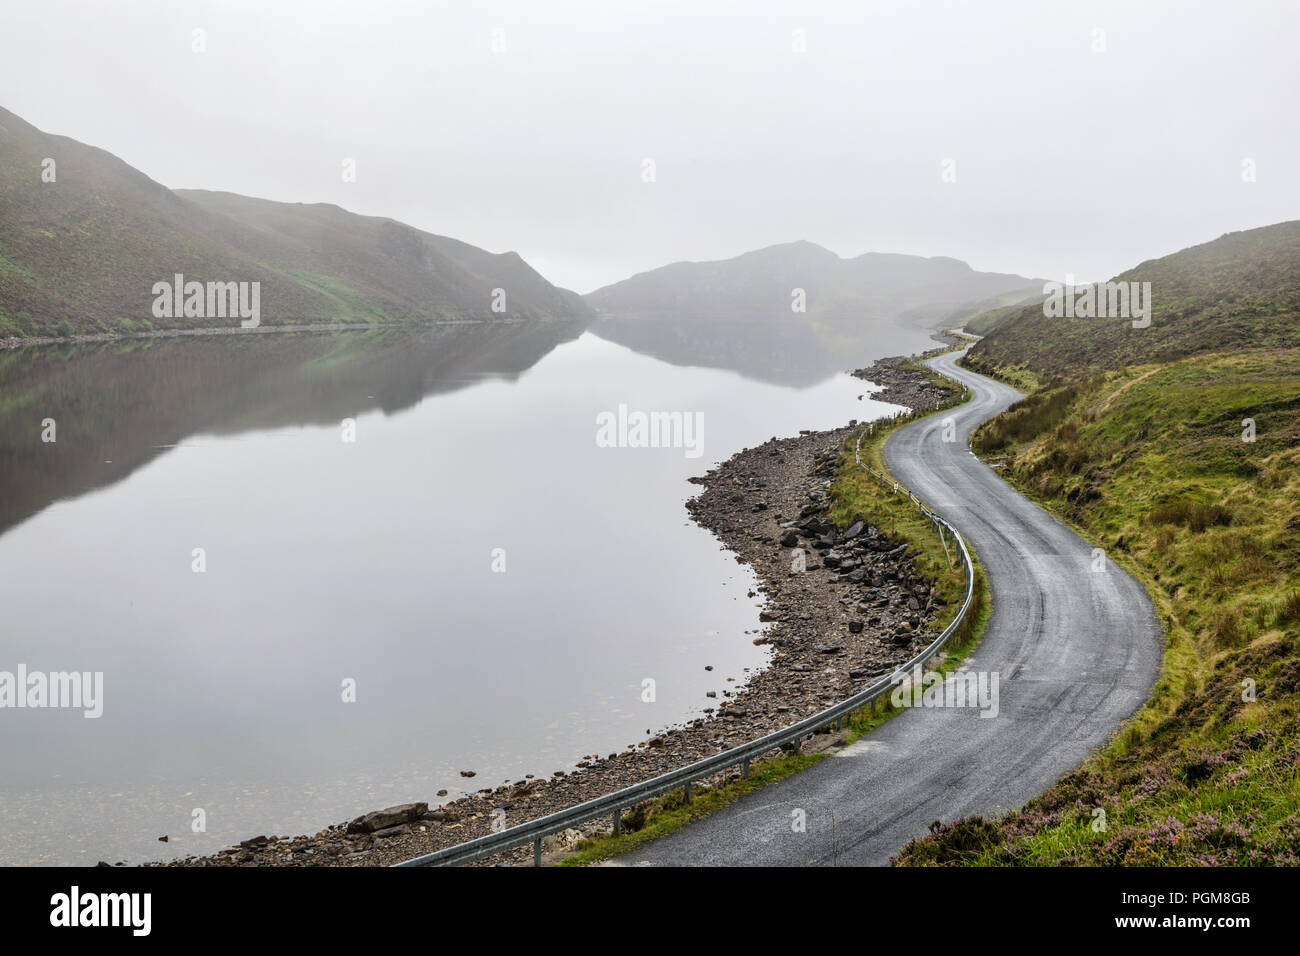 Il s'agit d'une photo d'un lac de montagne sinueuses route dans la brume matinale. Ce lac s'appelle le lac de sel et est situé dans la région de Donegal Irlande Banque D'Images